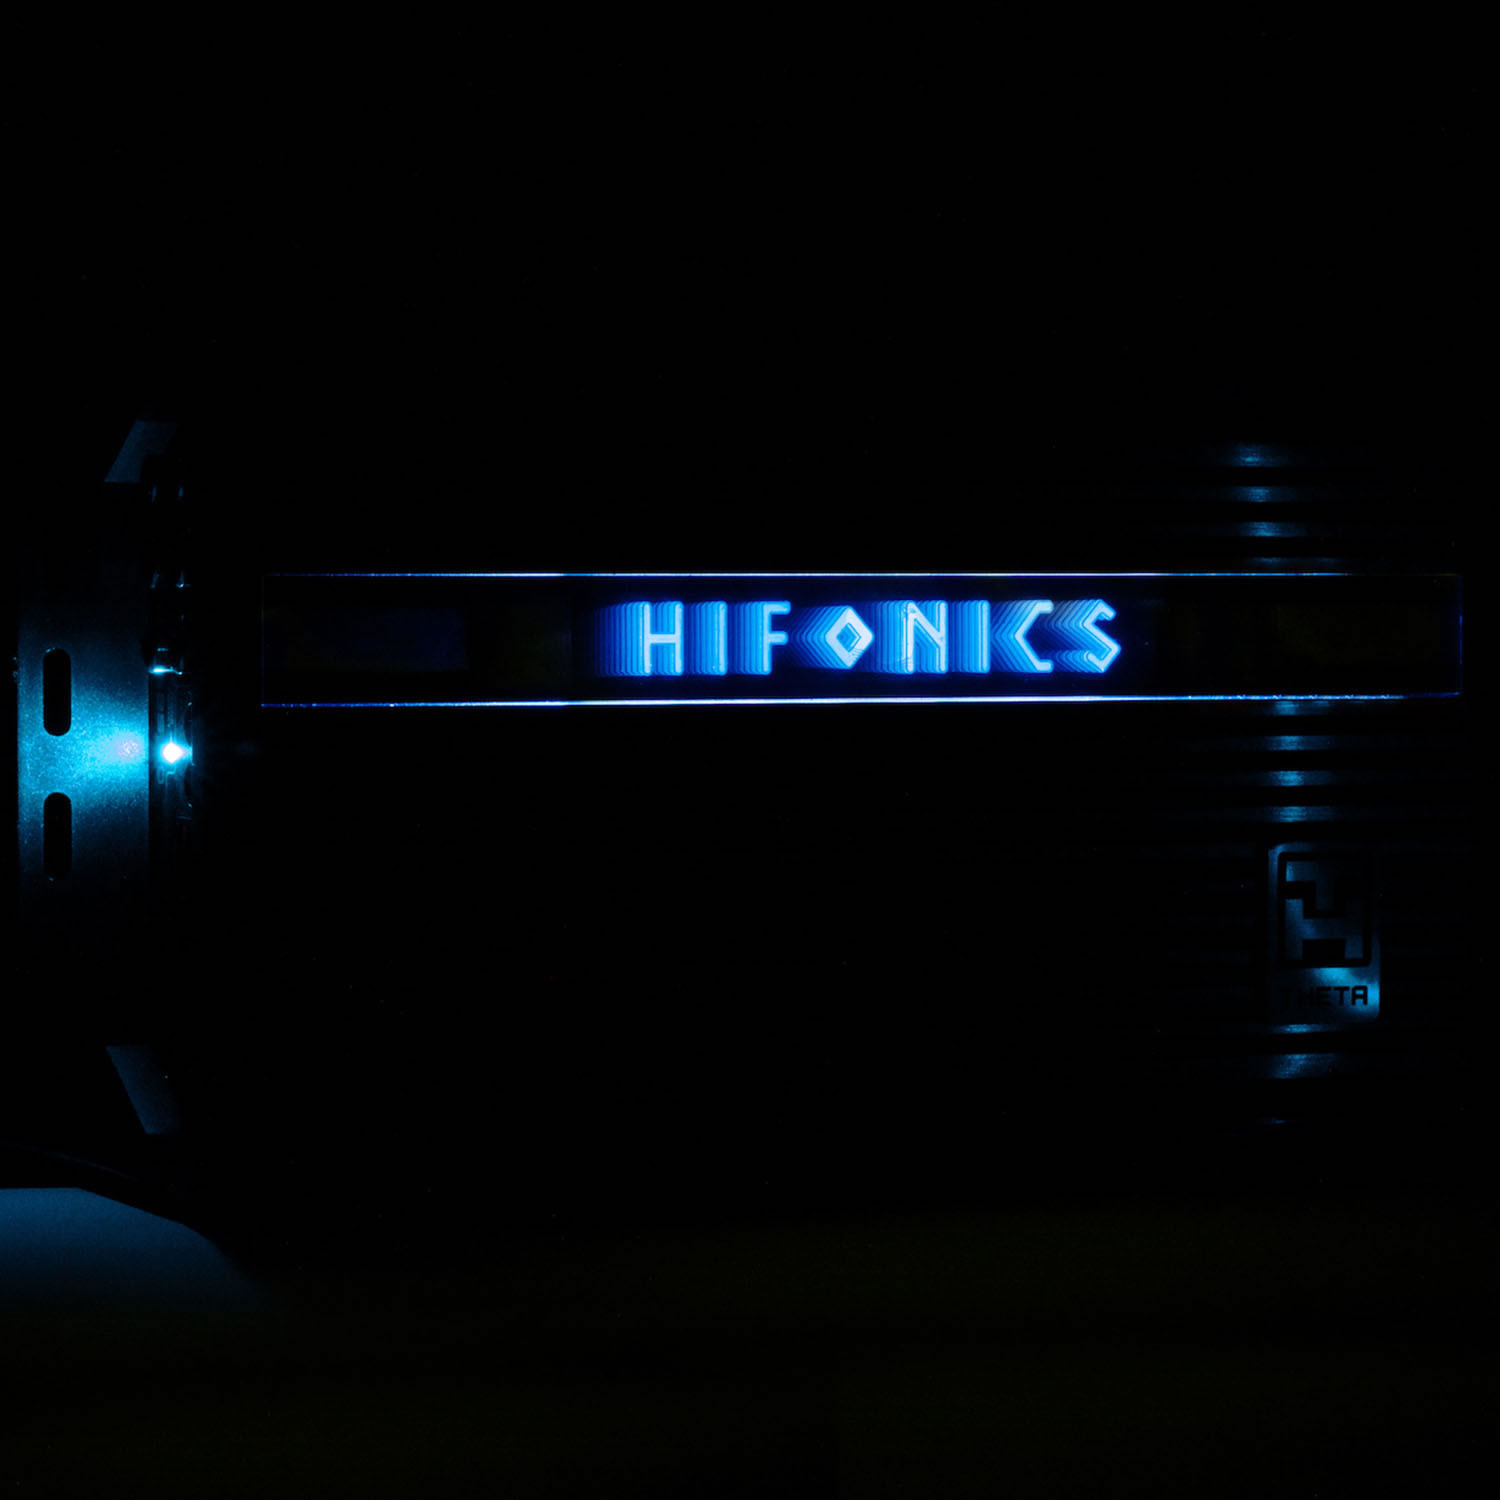 HIFONICS ZEUS Alu Butyl 160 dB - Hifonics